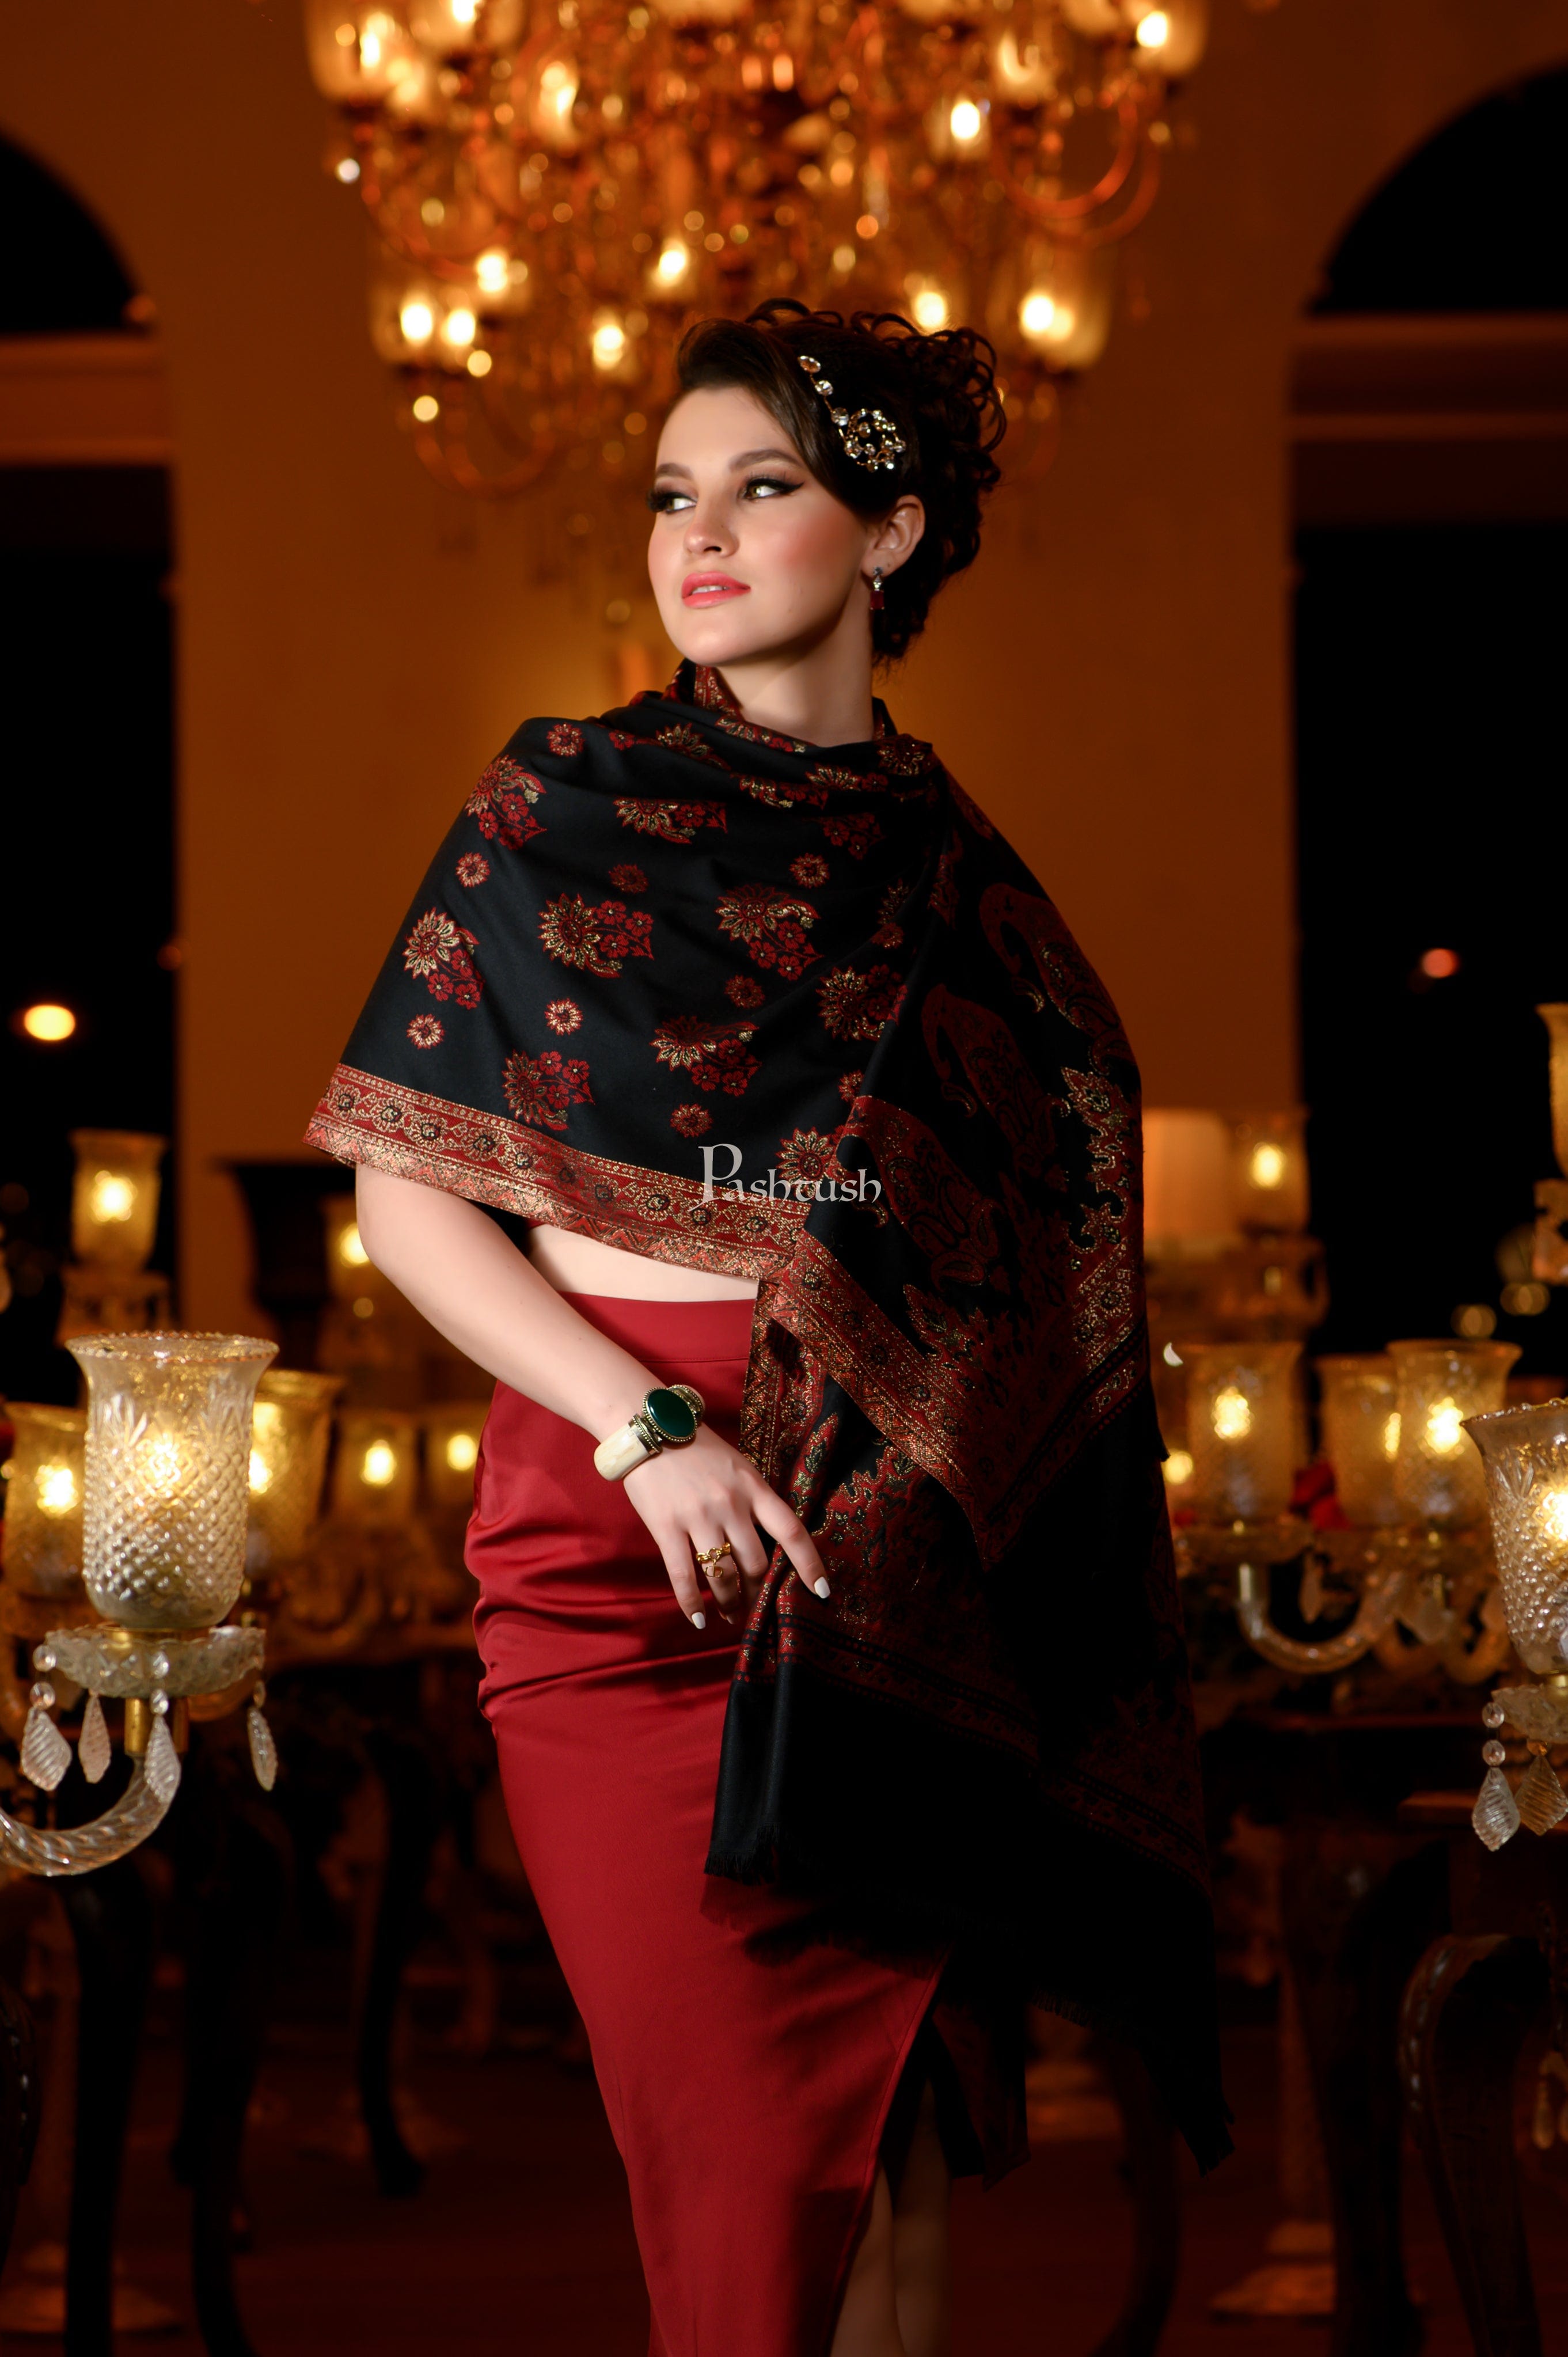 Pashtush Womens faux pashmina shawl, ethnic weave design, multi